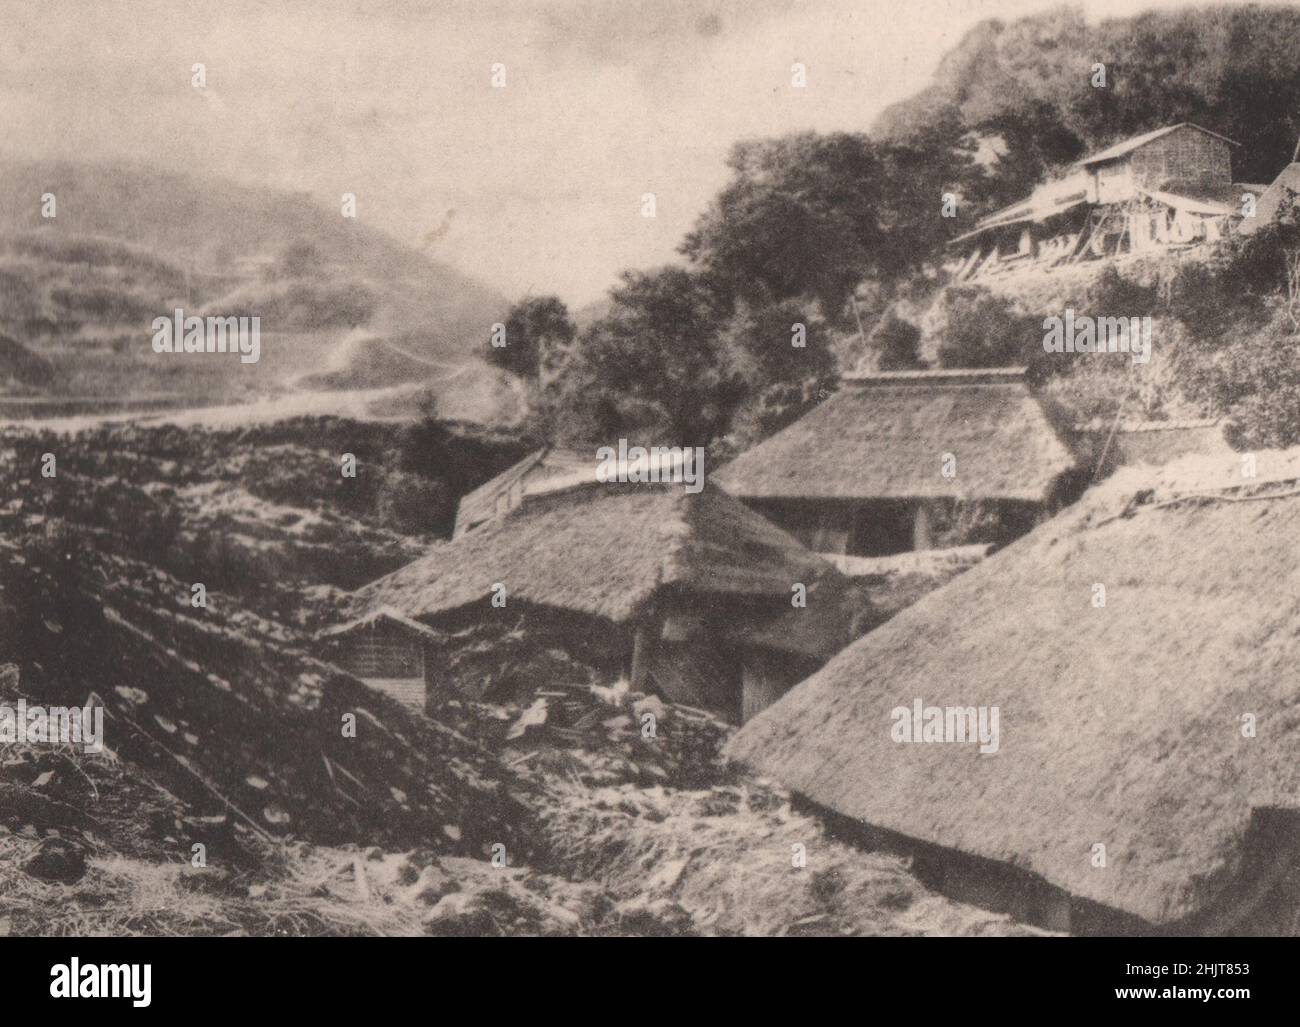 Terremoto de Japón 1923: Las viviendas de los aldeanos en Nabukawa enterradas bajo arena y piedras Foto de stock